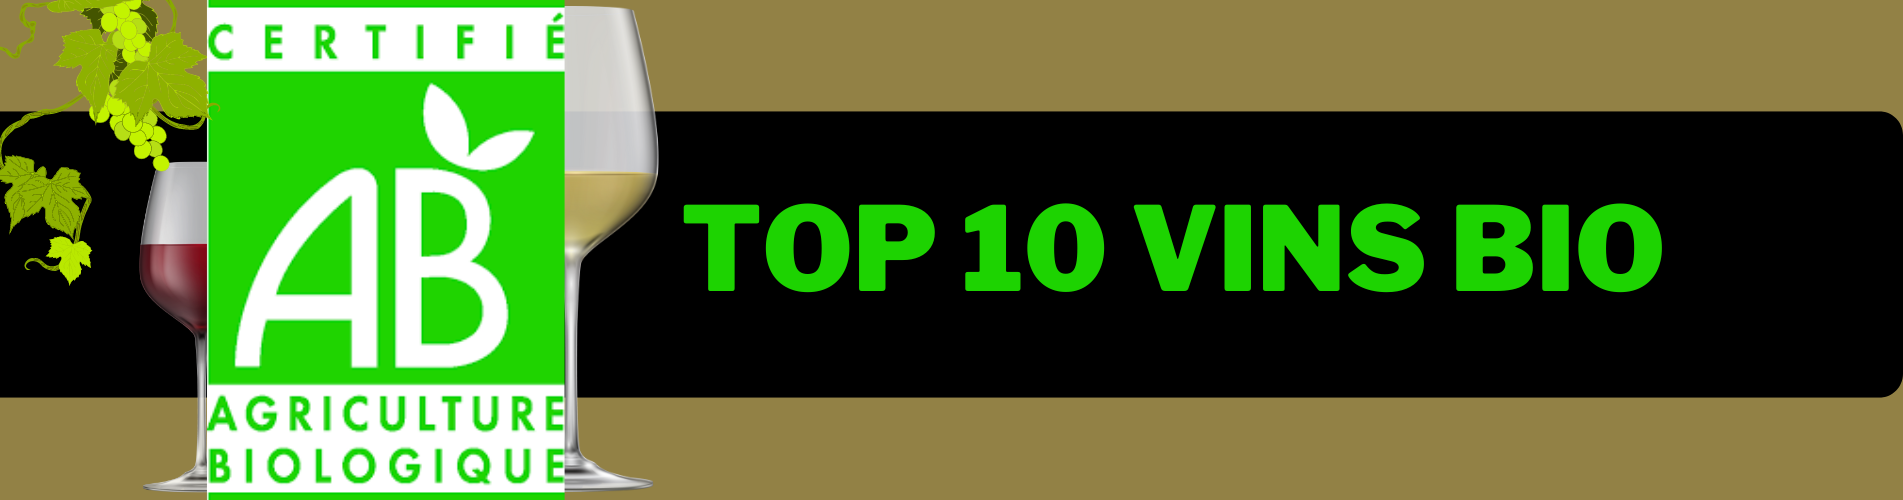 TOP 10 VINS BIO